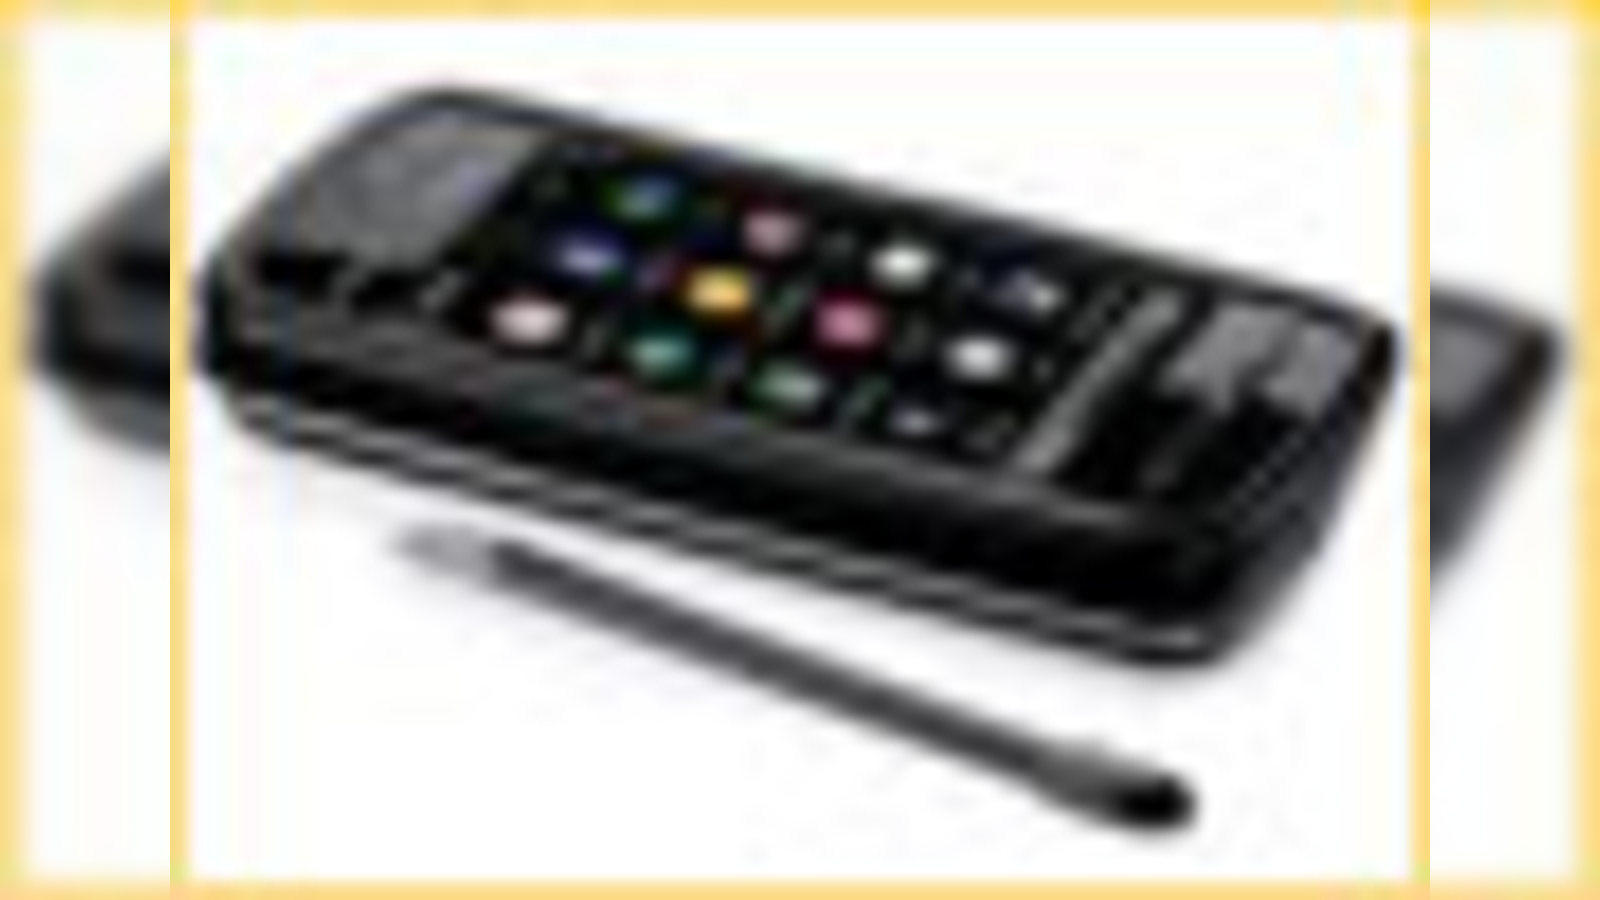 Nokia 5310 XpressMusic review | TechRadar